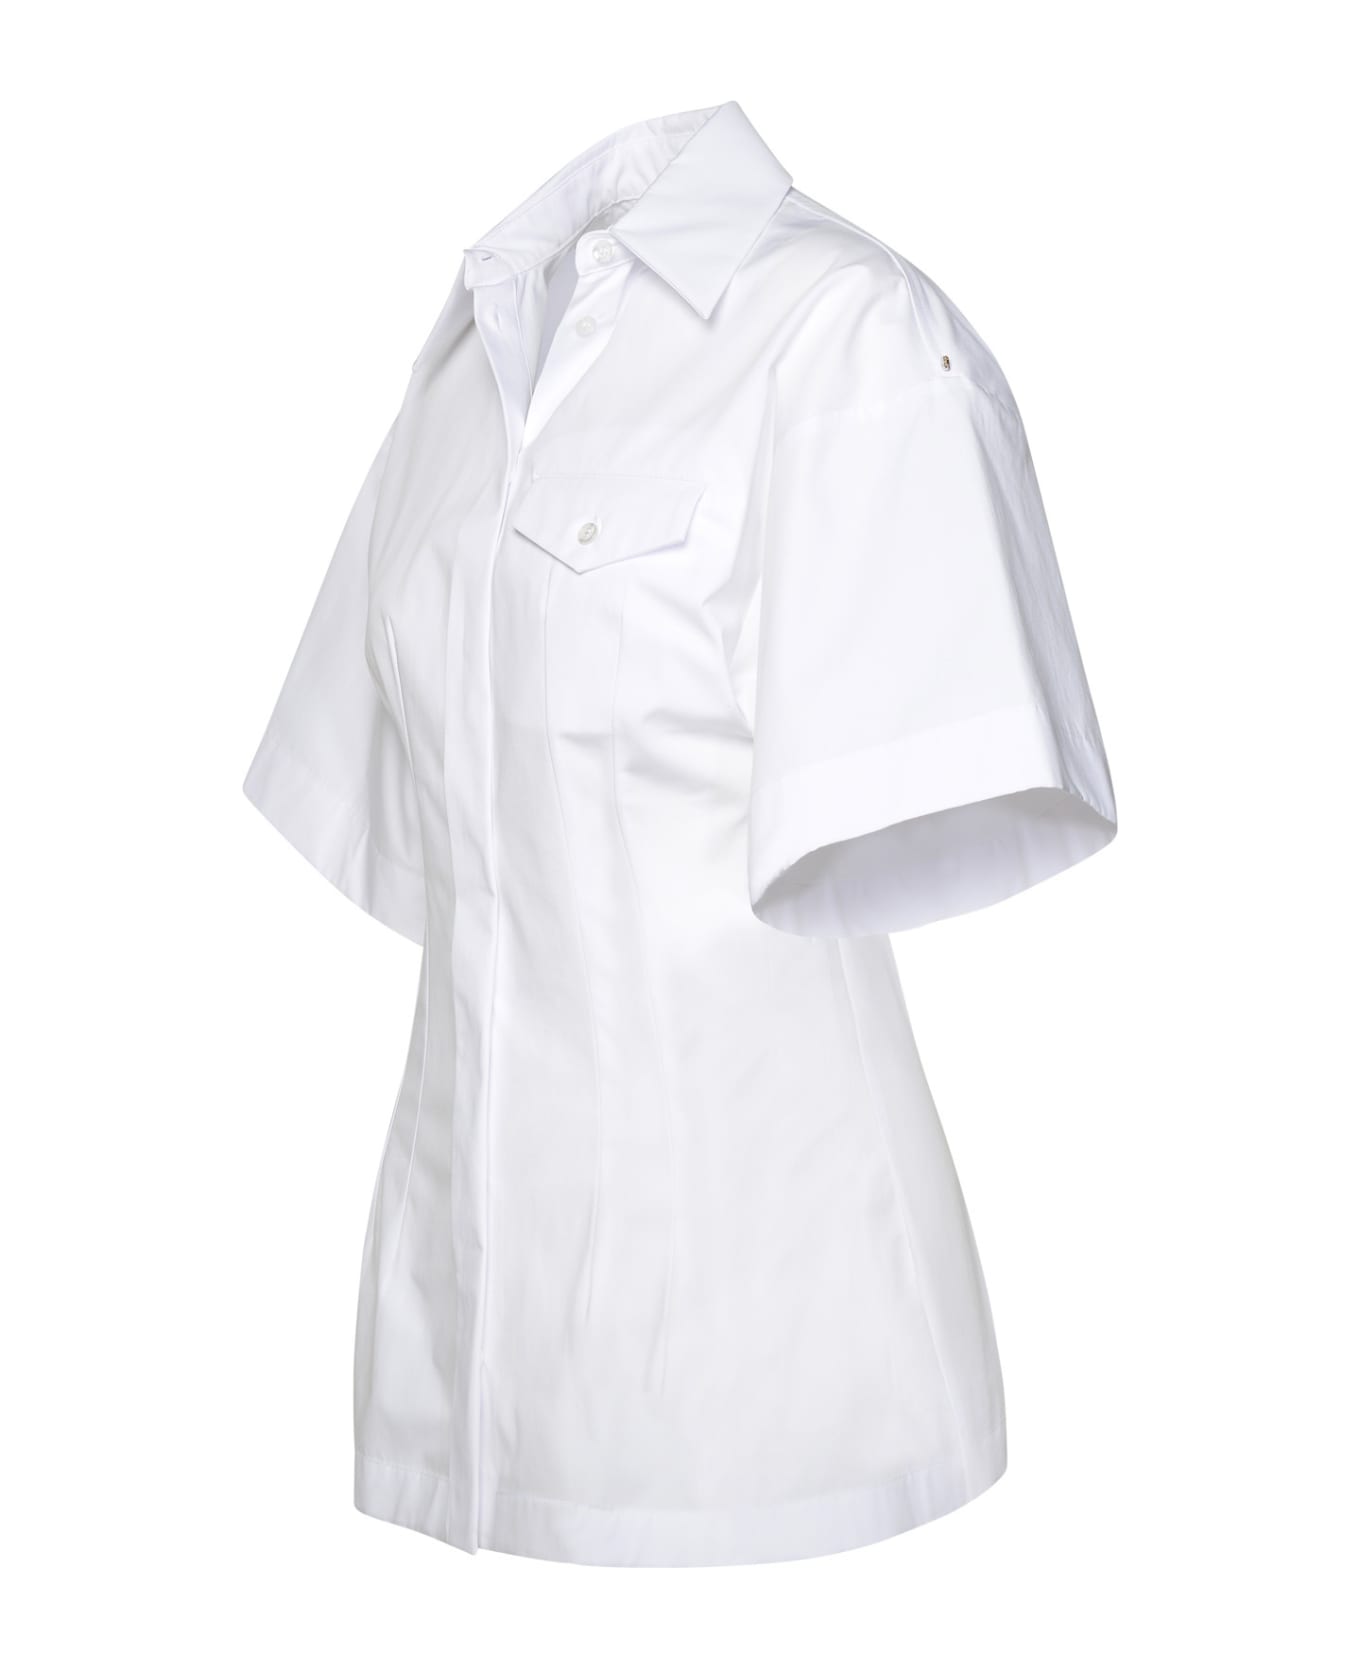 SportMax White Cotton Shirt - White シャツ